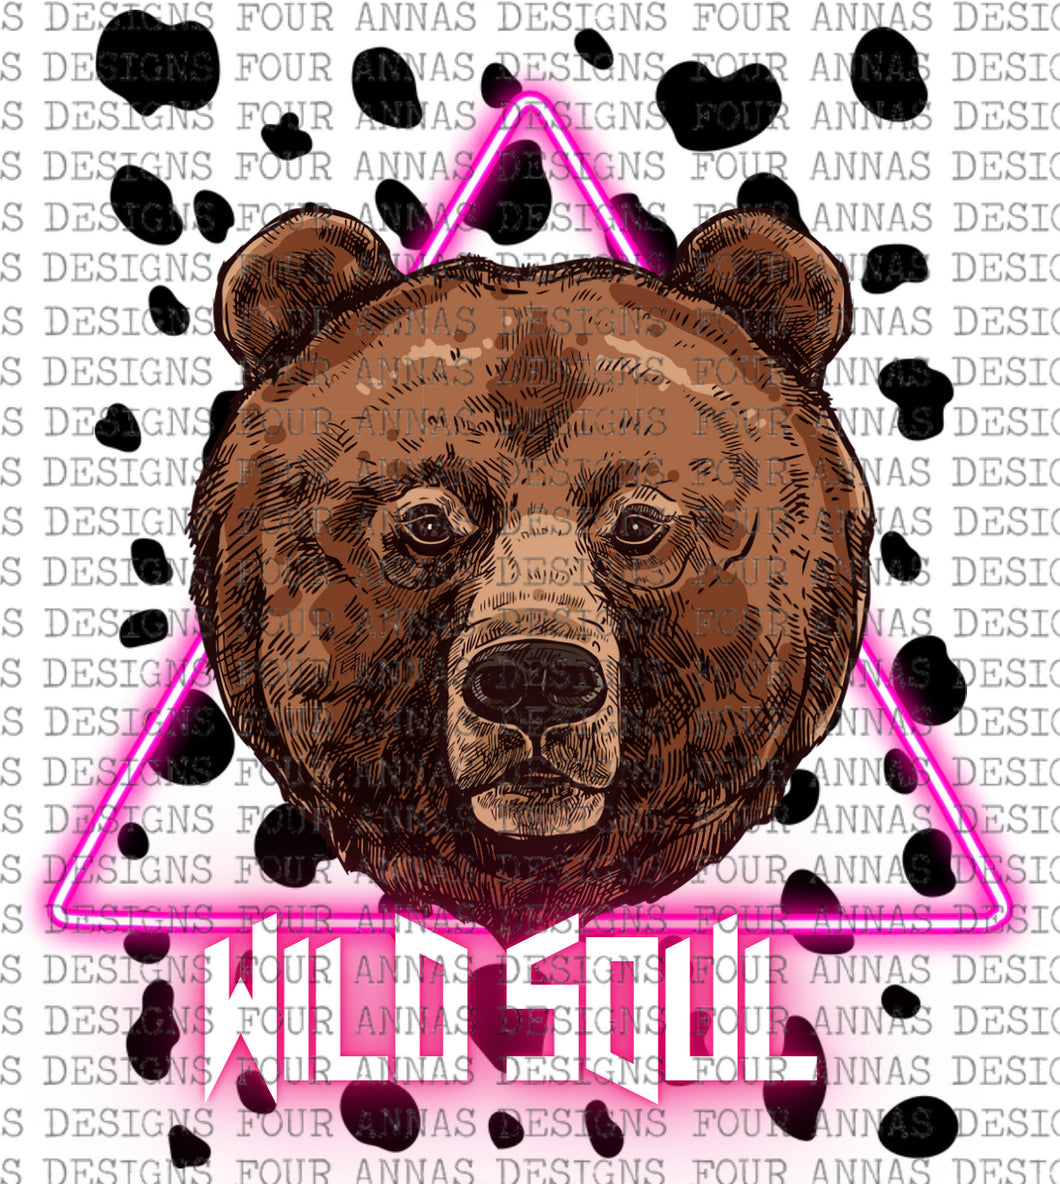 Wild soul brown bear